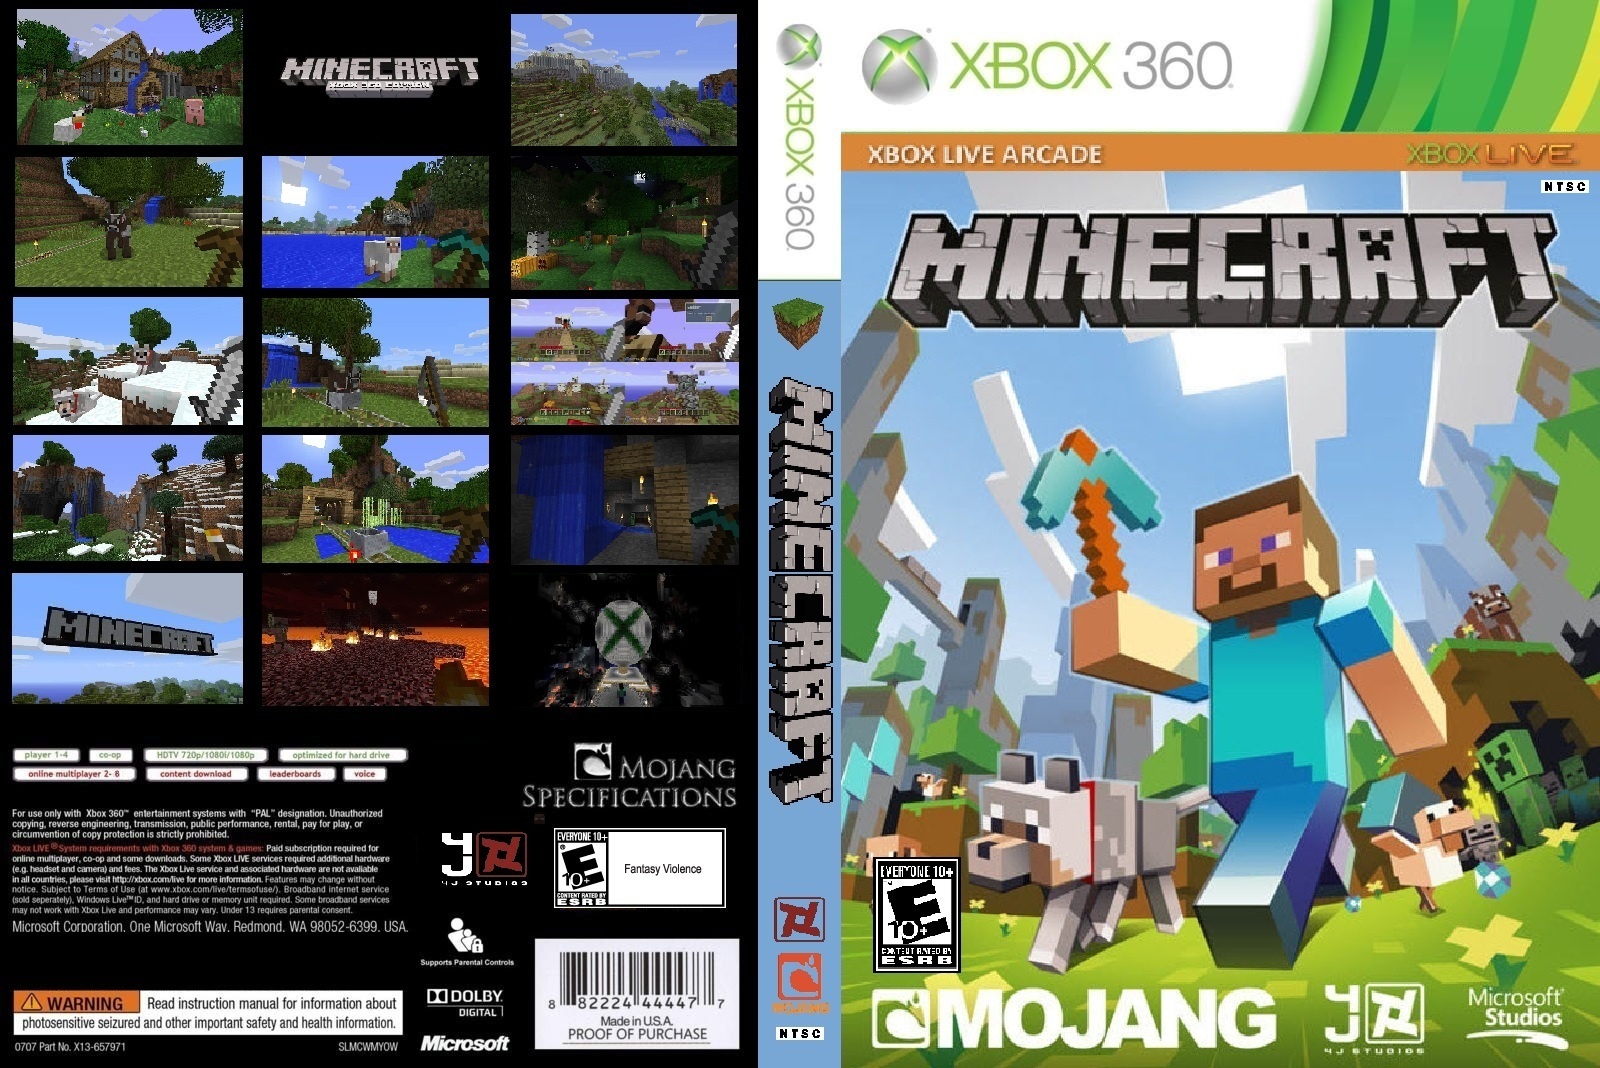 Minecraft: Xbox 360 Edition box cover